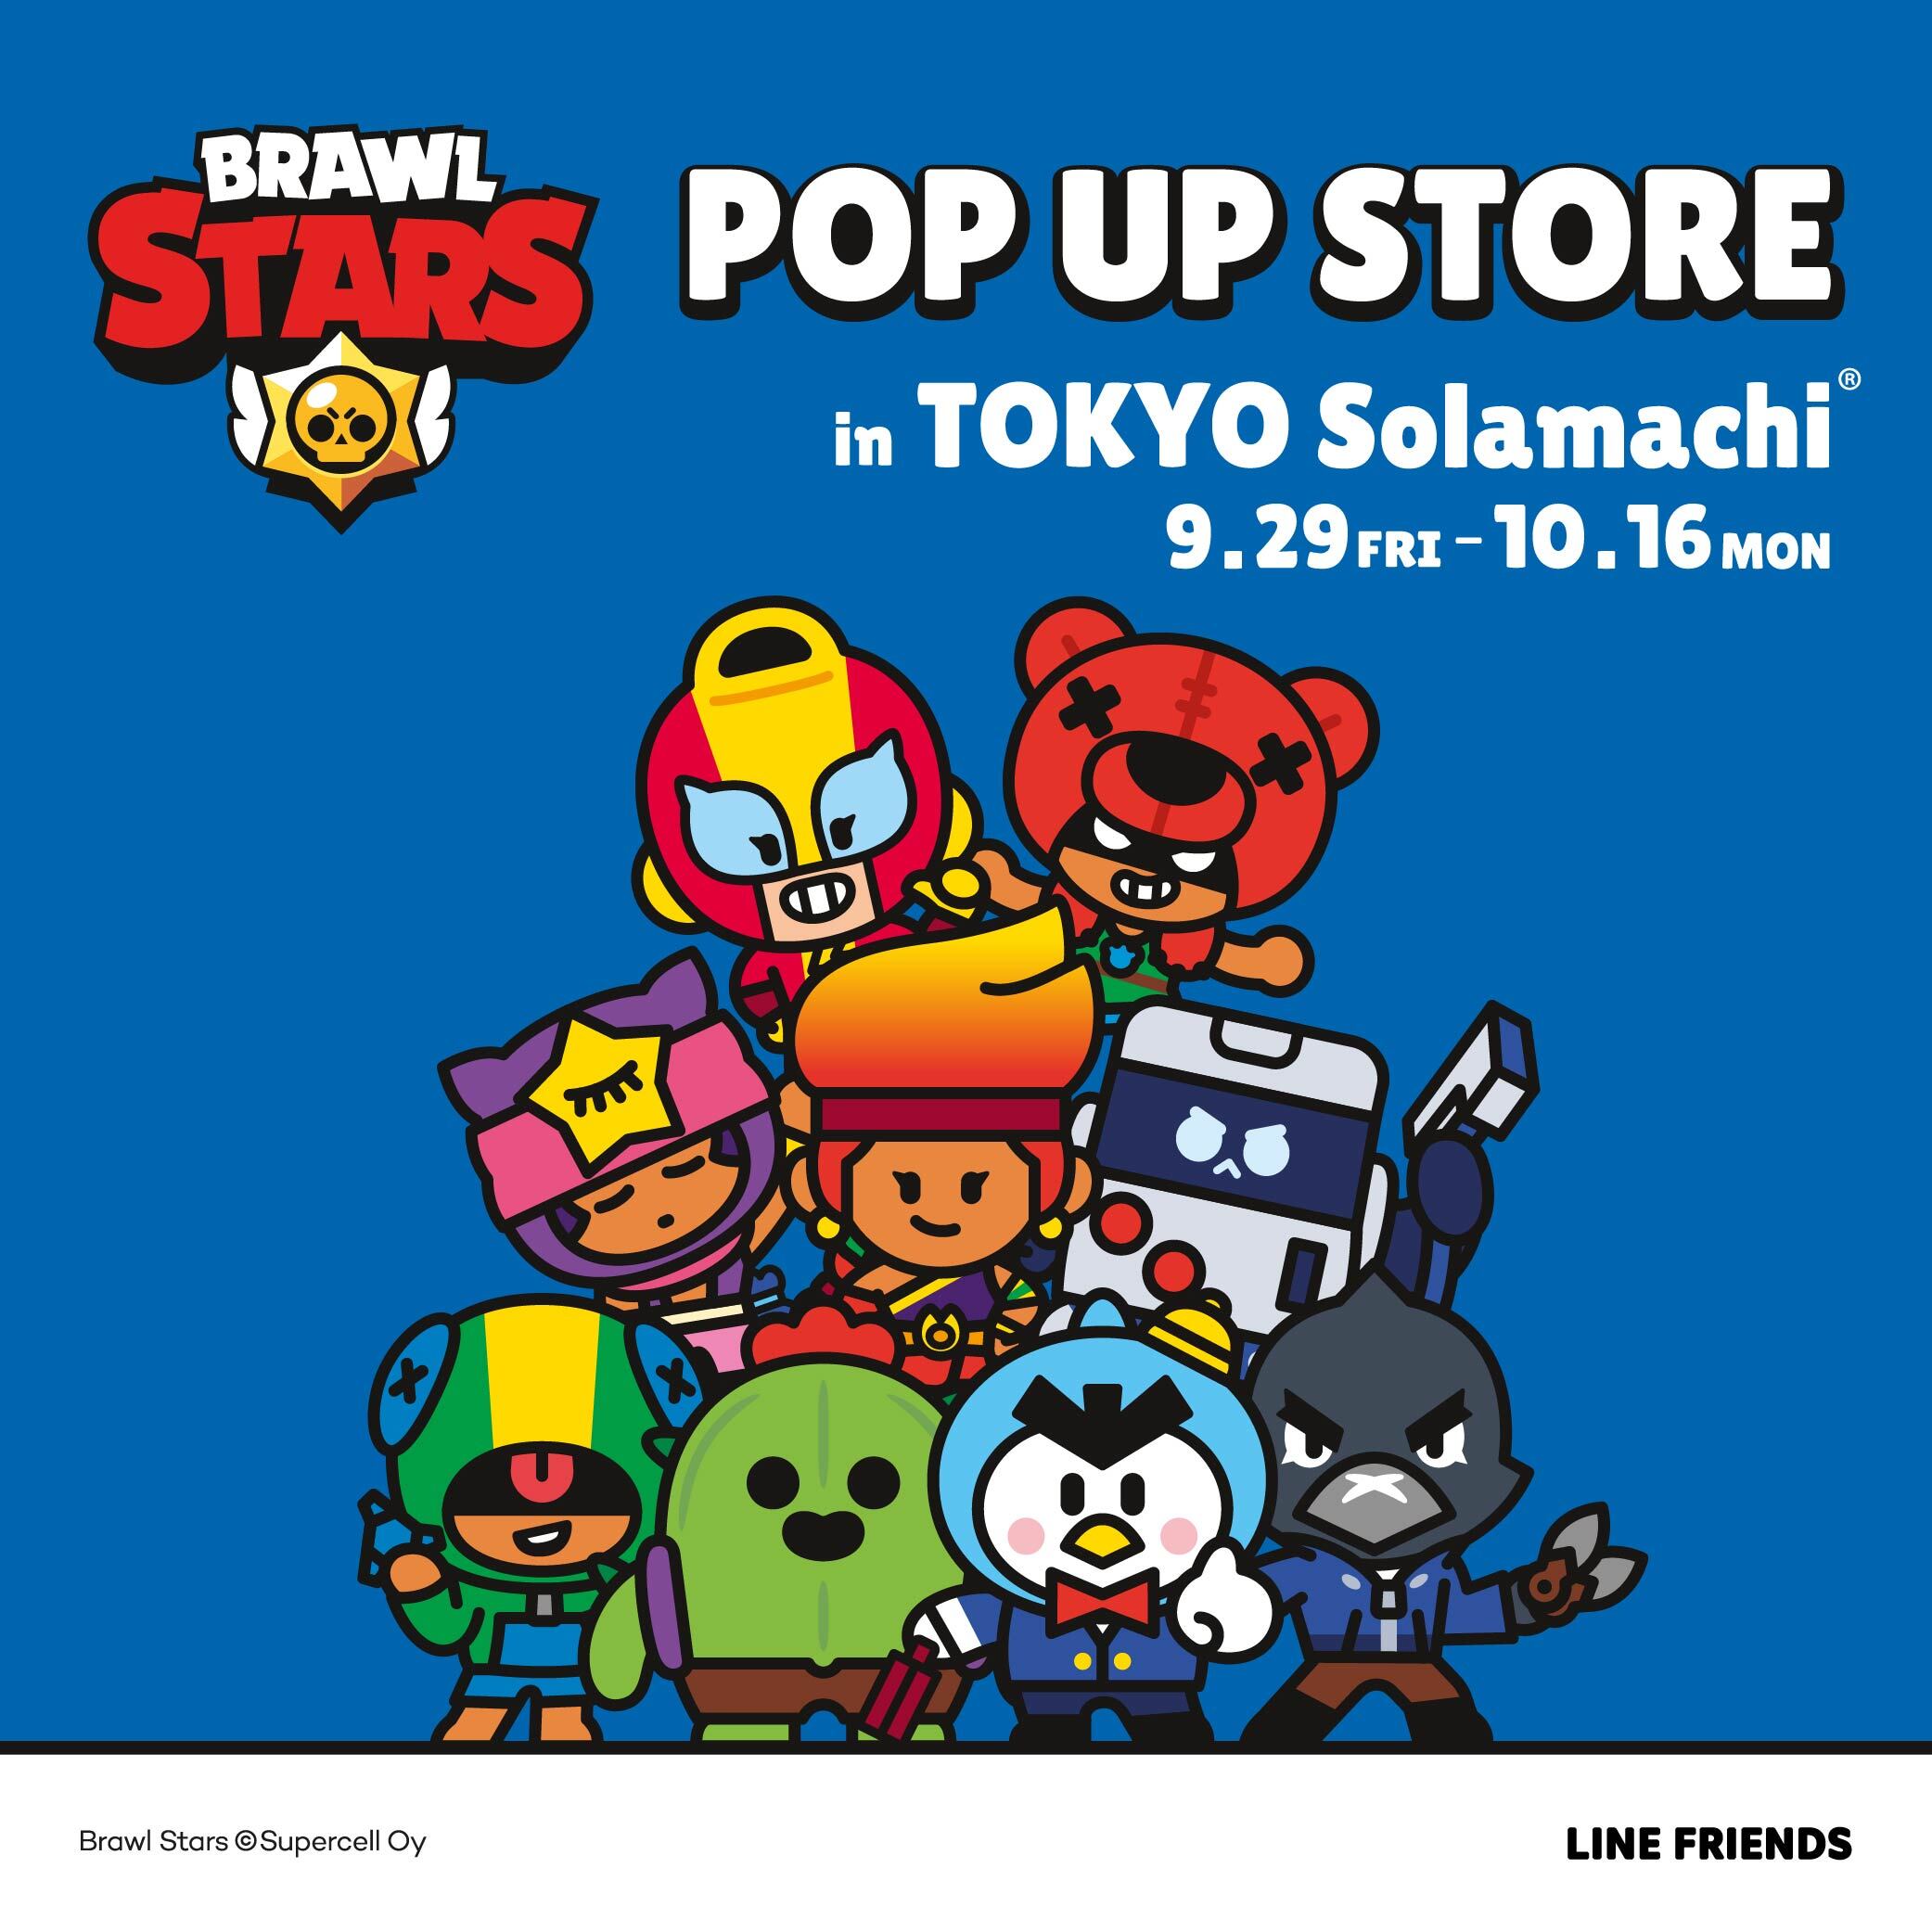 大人気モバイルアクションゲーム「Brawl Stars」の
公式POP UP STOREが
東京ソラマチにて9月29日(金)～10月16日(月)期間限定オープン！